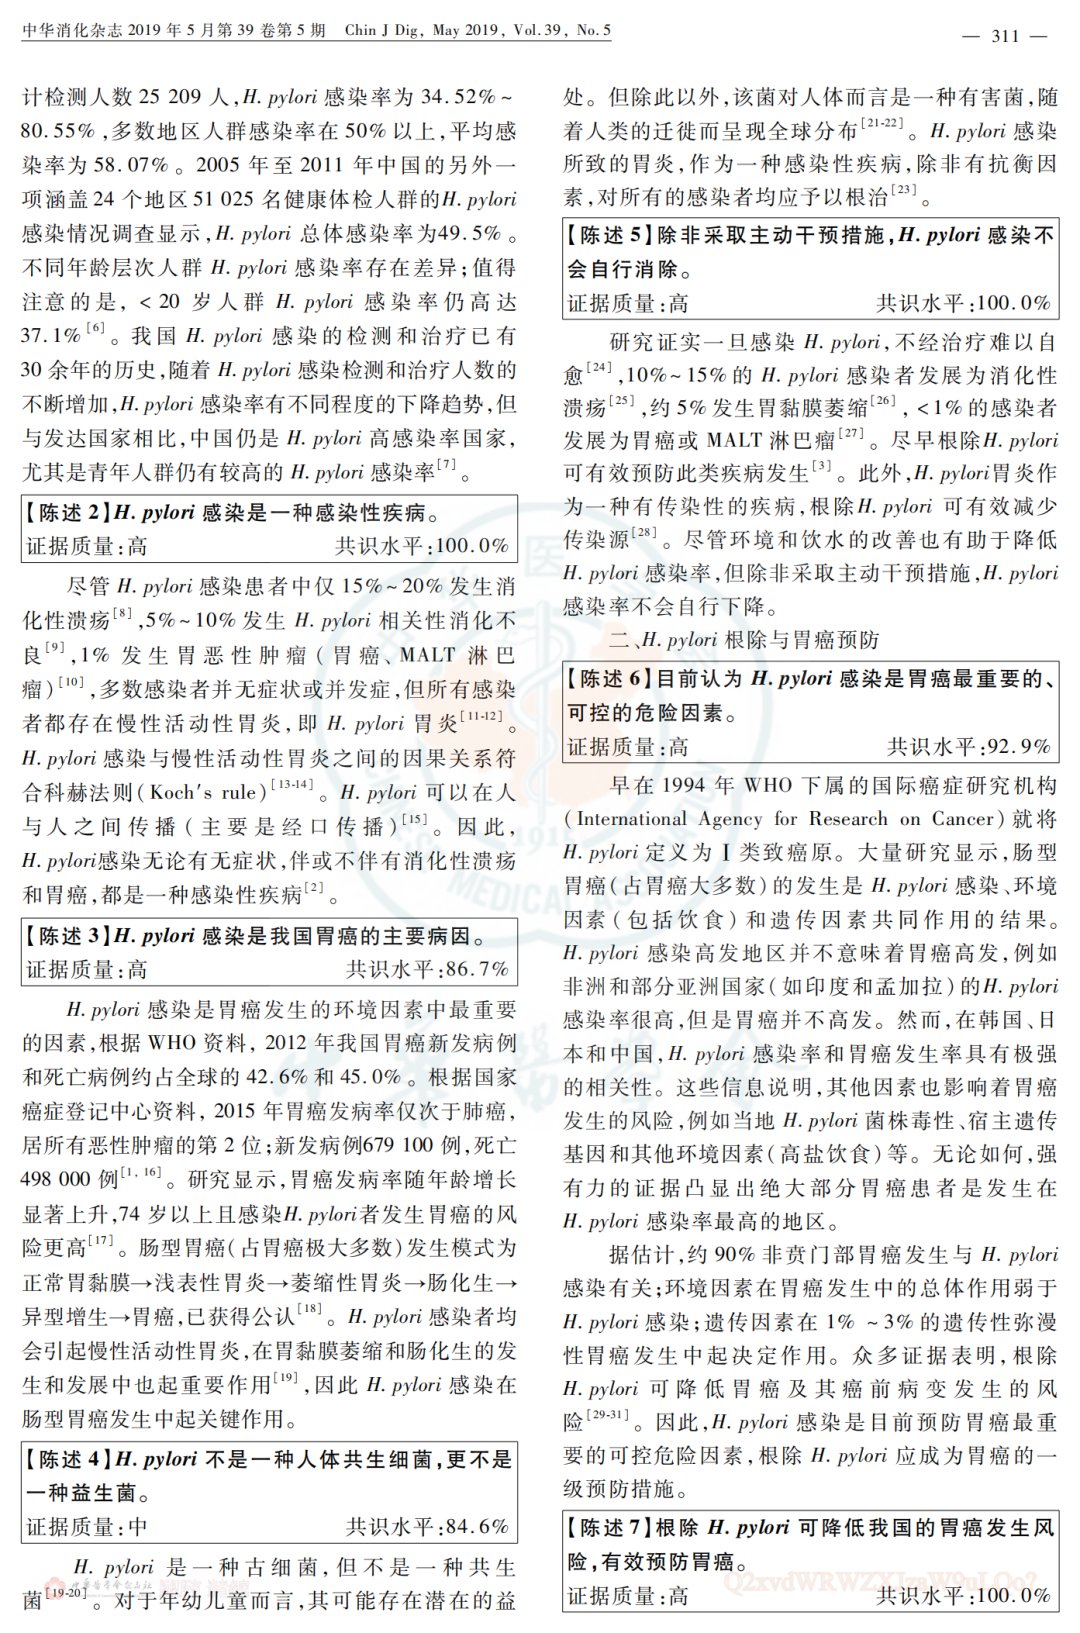 幽门螺杆菌|中国幽门螺杆菌根除与胃癌防控的专家共识意见